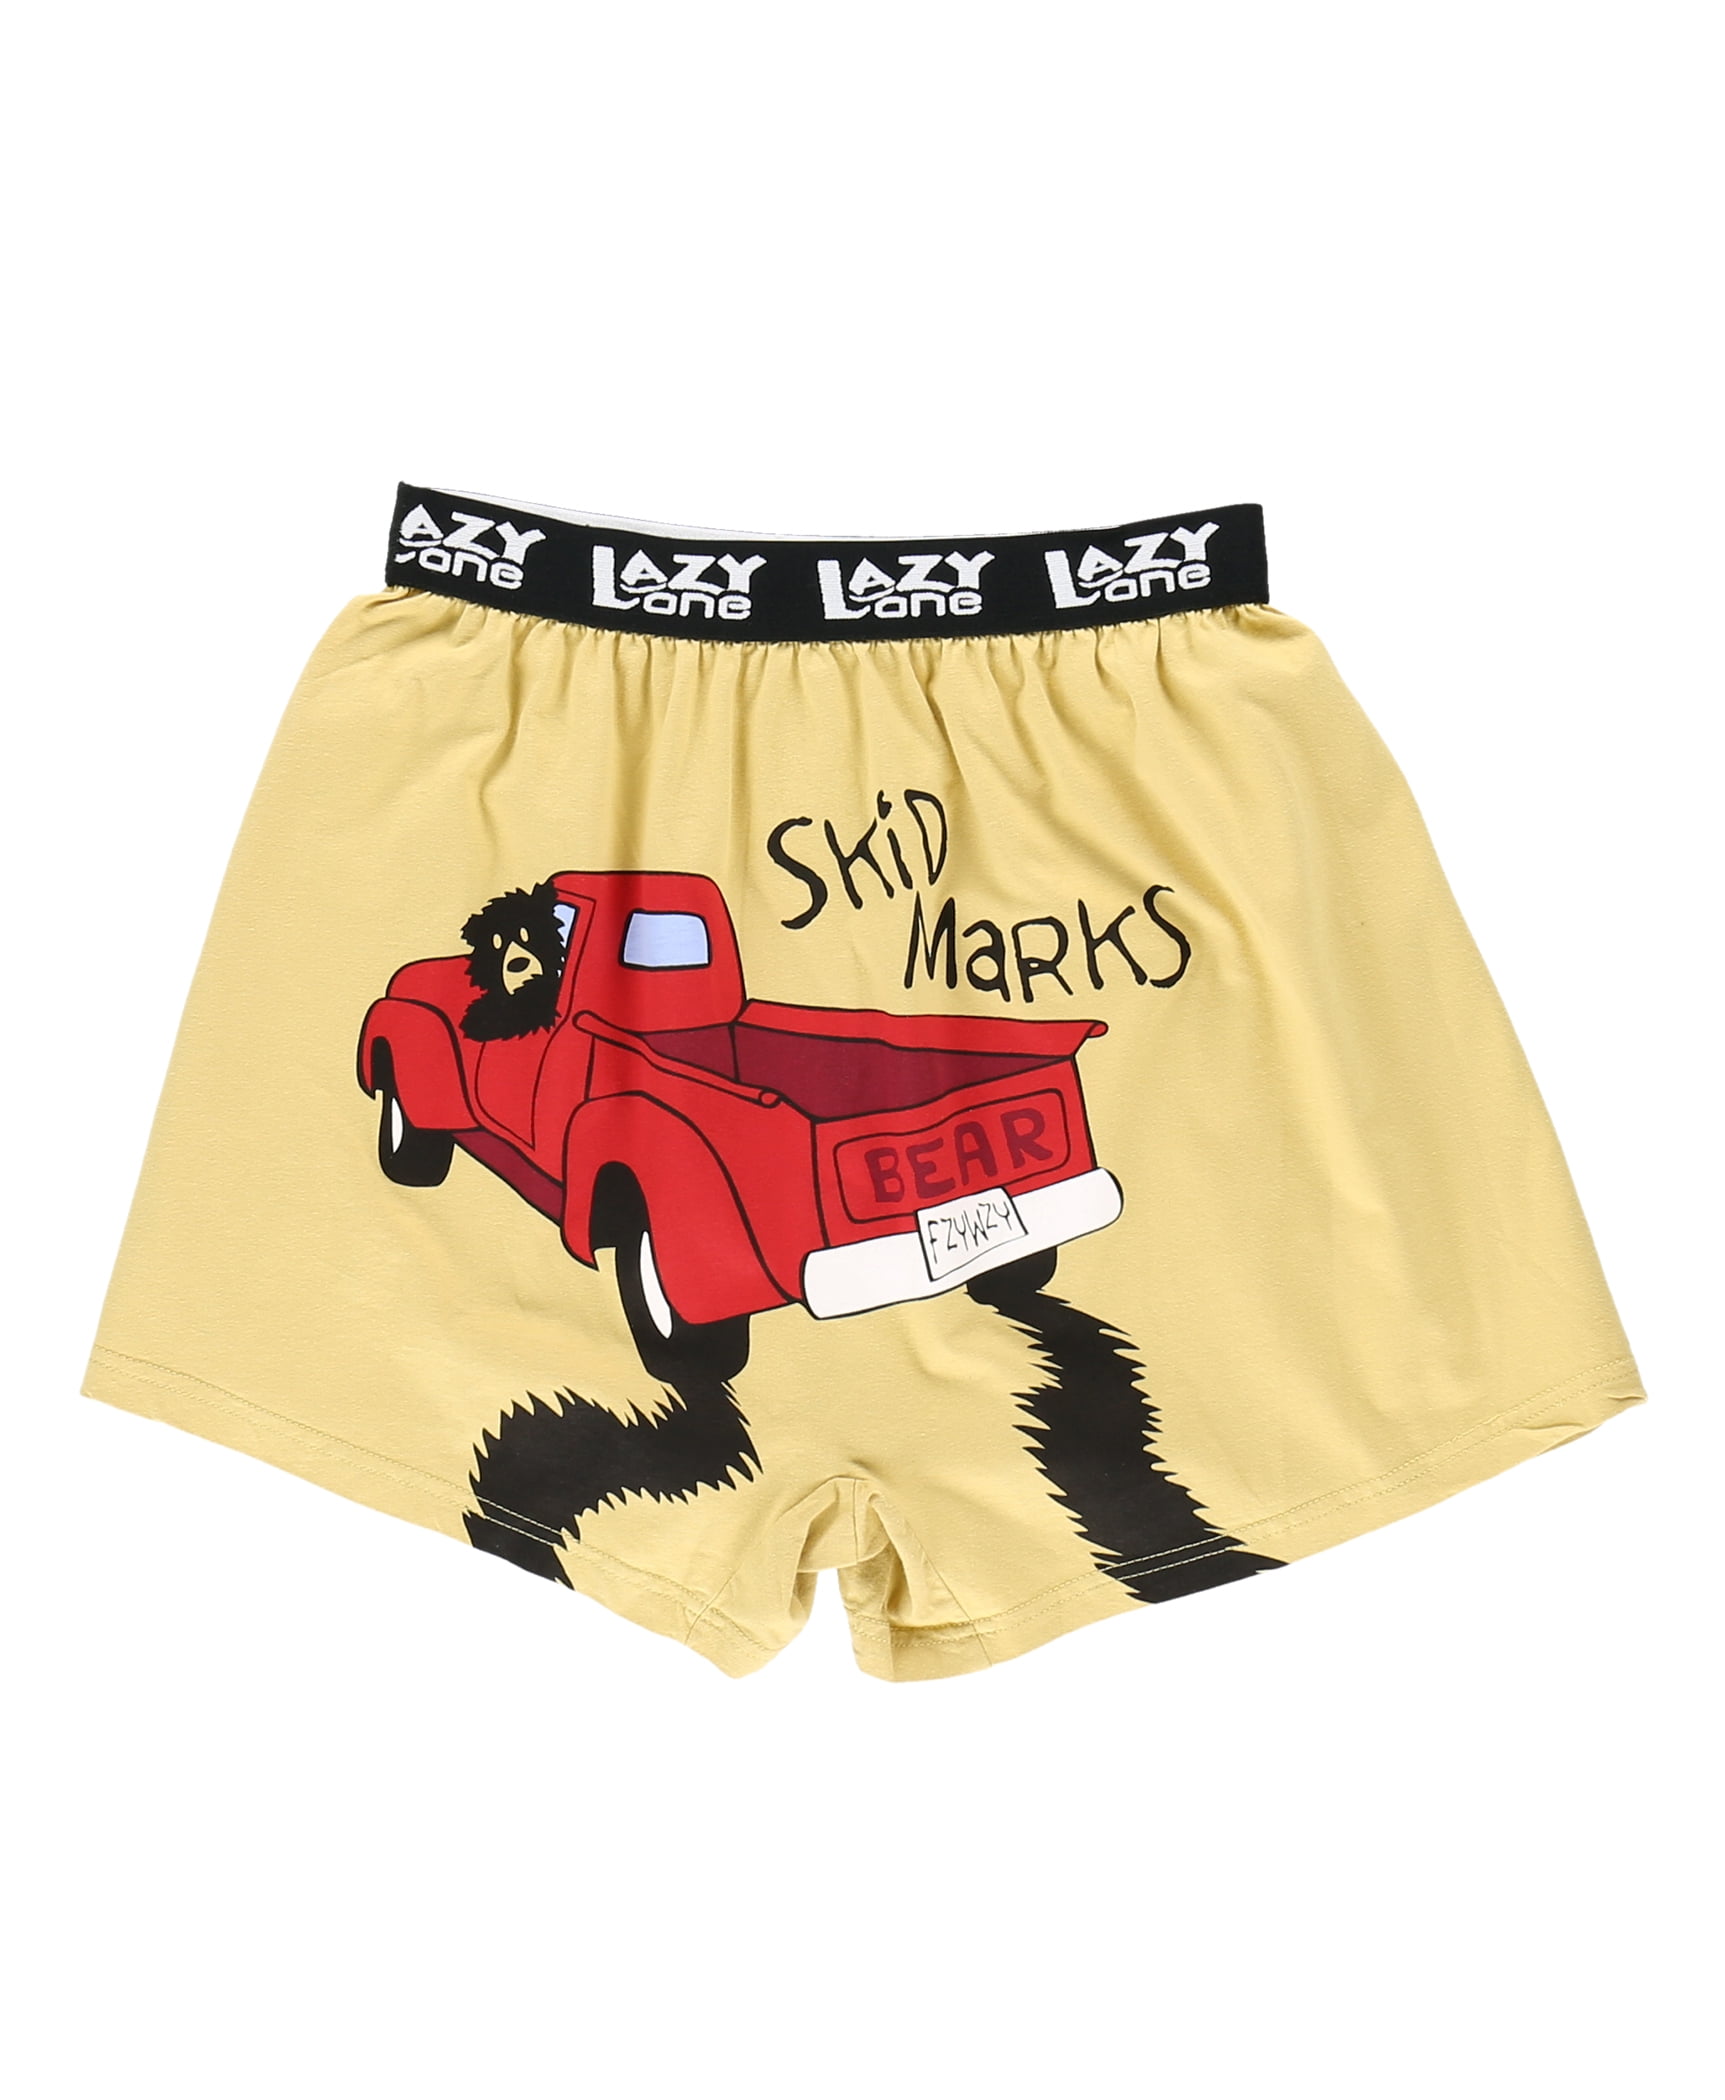 Undies Have Skid Marks Boxer Shorts